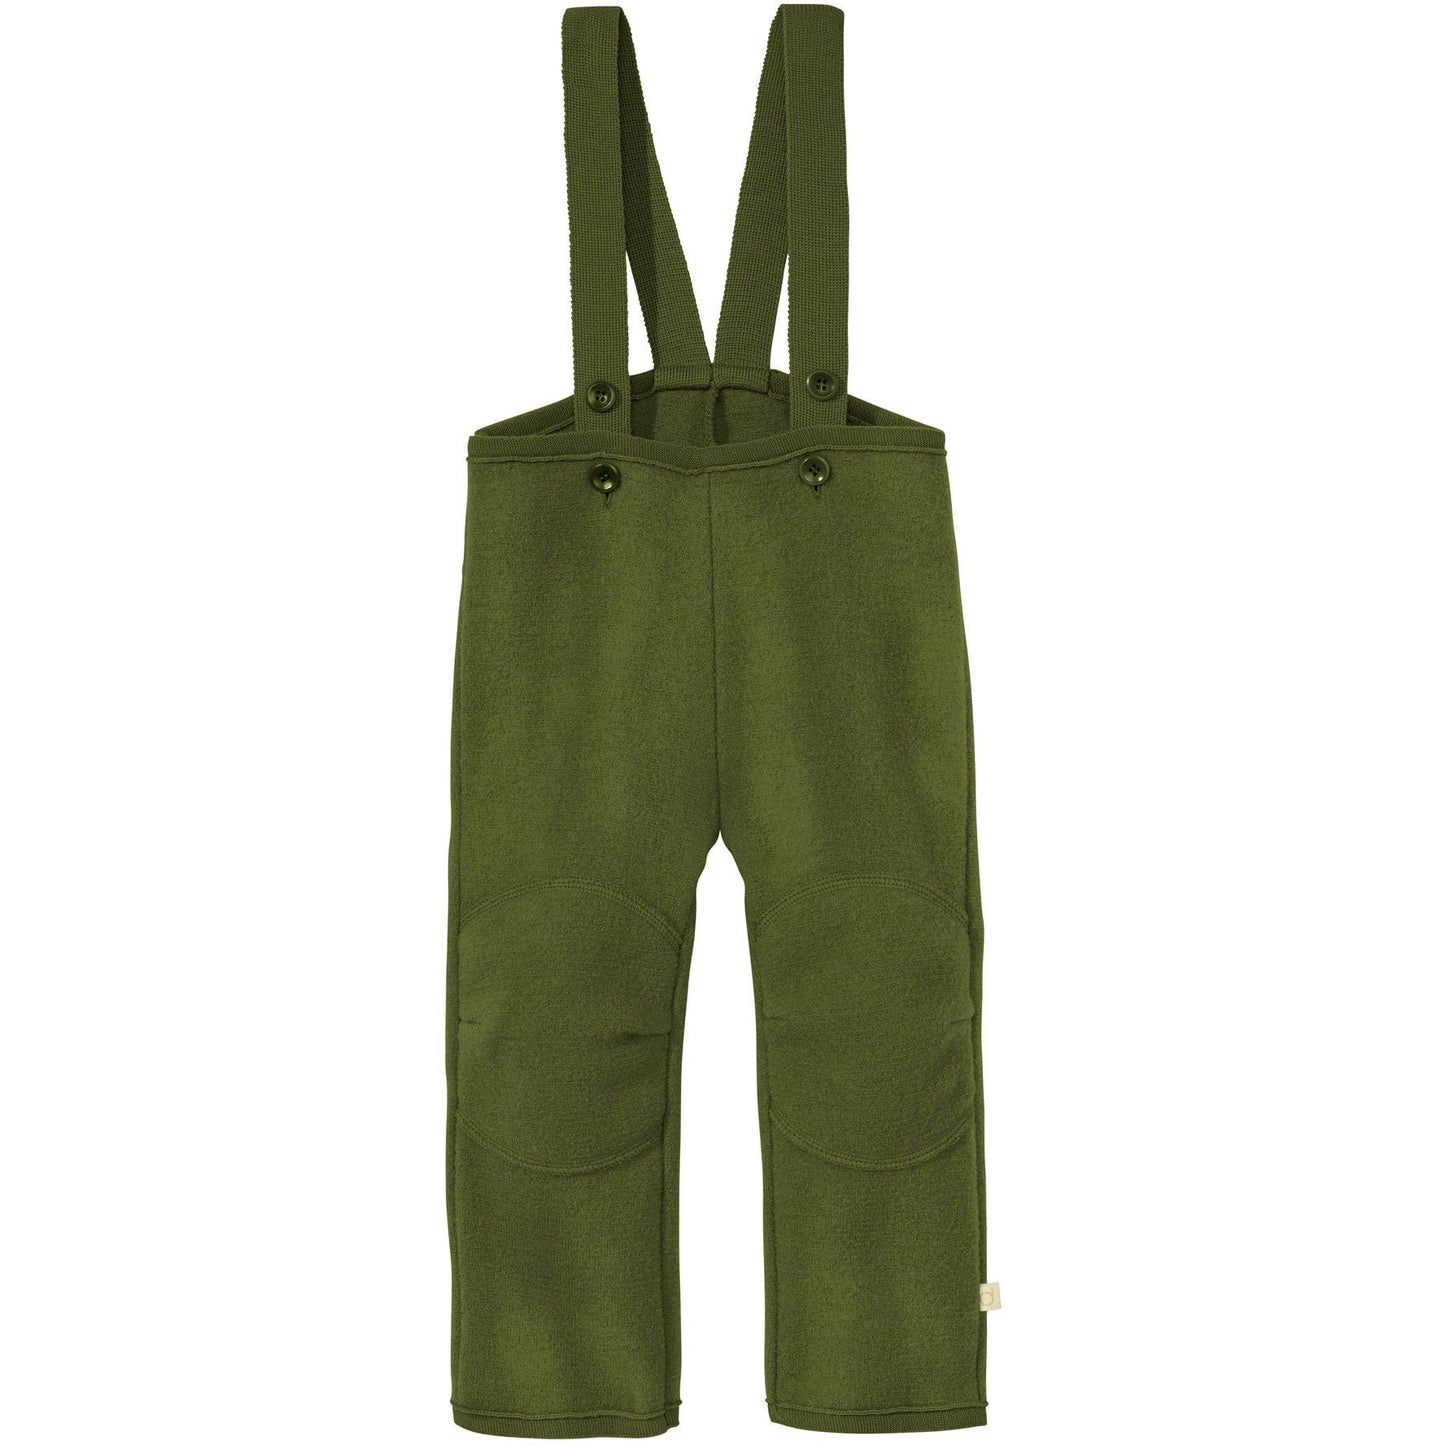 Disana Organic Boiled Merino Wool Trouser Overall - Nature's Wild Child